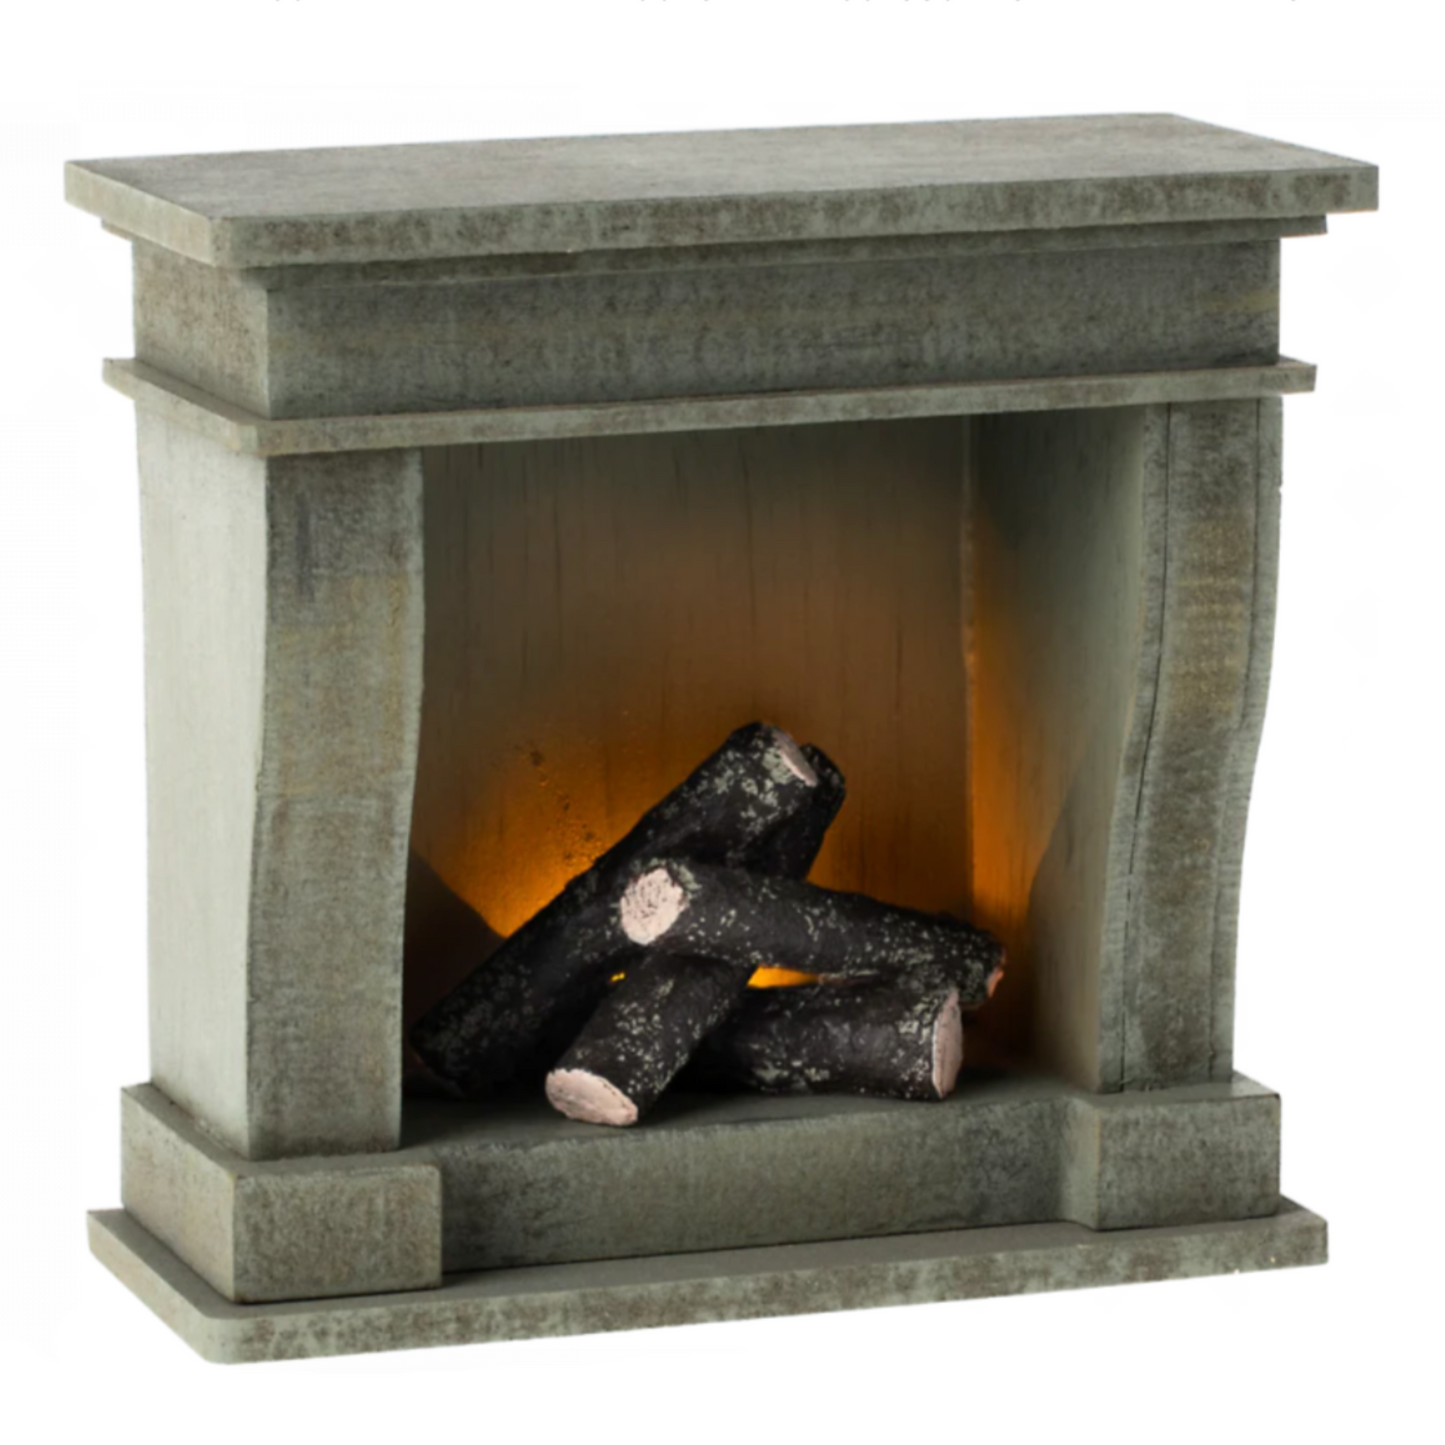 Maileg Miniature Fireplace, Green (8305765220639)